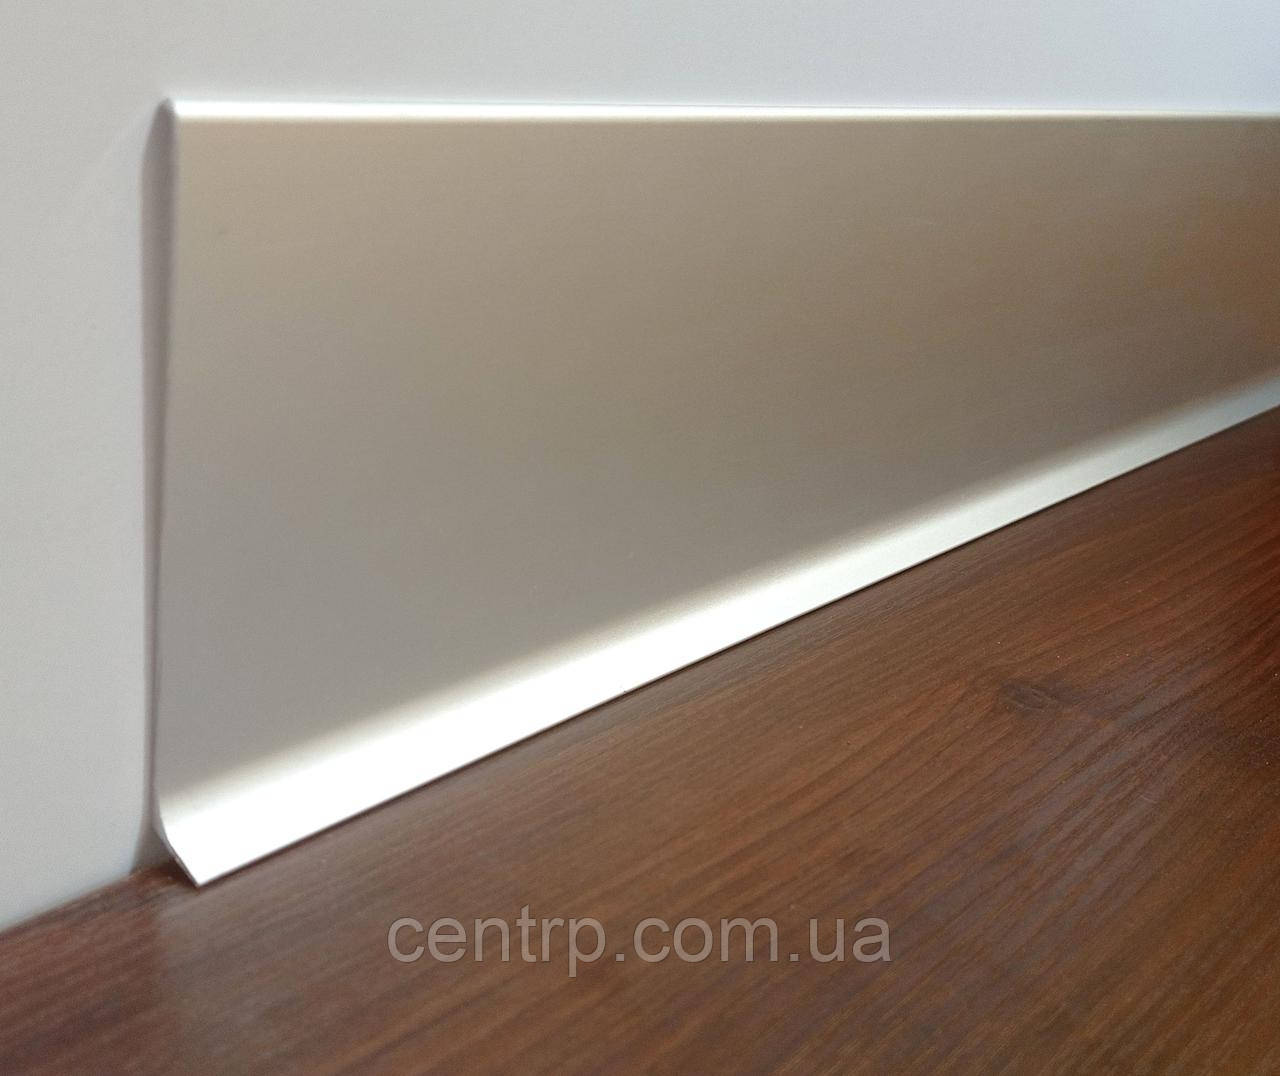 Алюмінієвий плінтус накладний BEST DEAL 3/100 Срібло матове, висота 100 мм, довжина 2,5 м